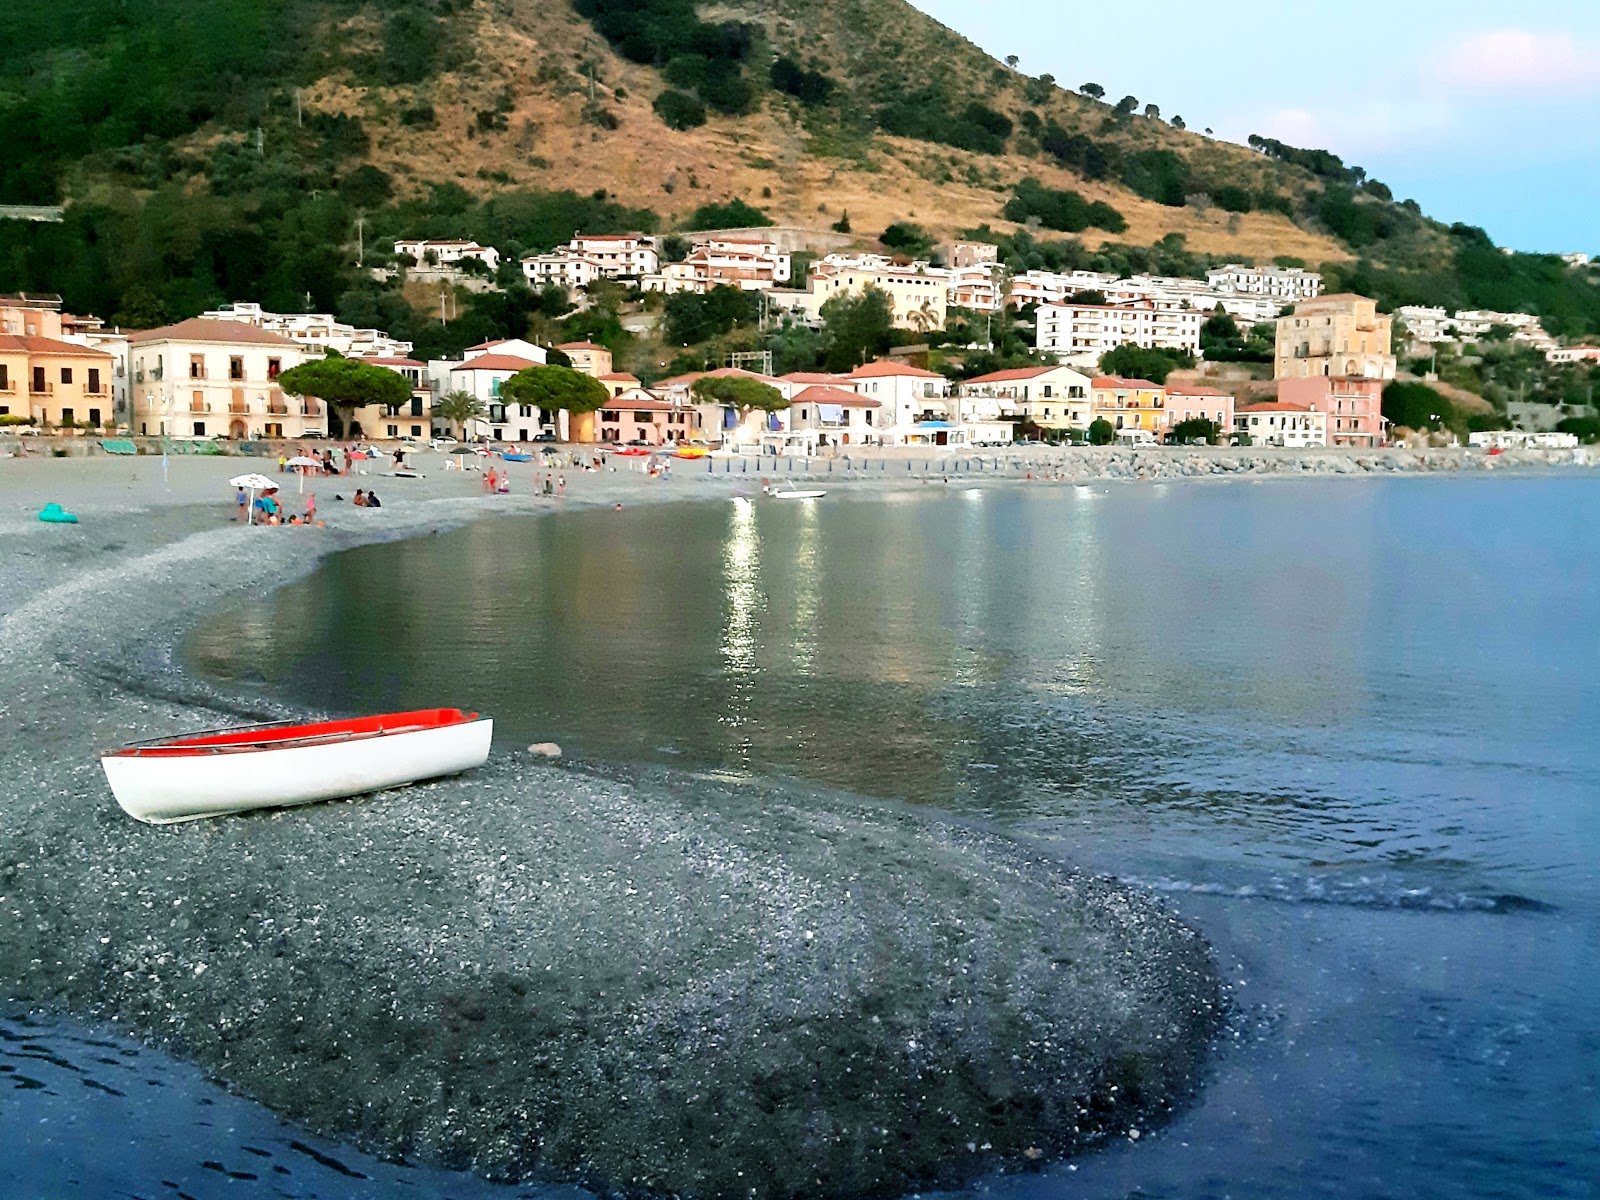 Cittadella del Capo beach'in fotoğrafı gri kum yüzey ile